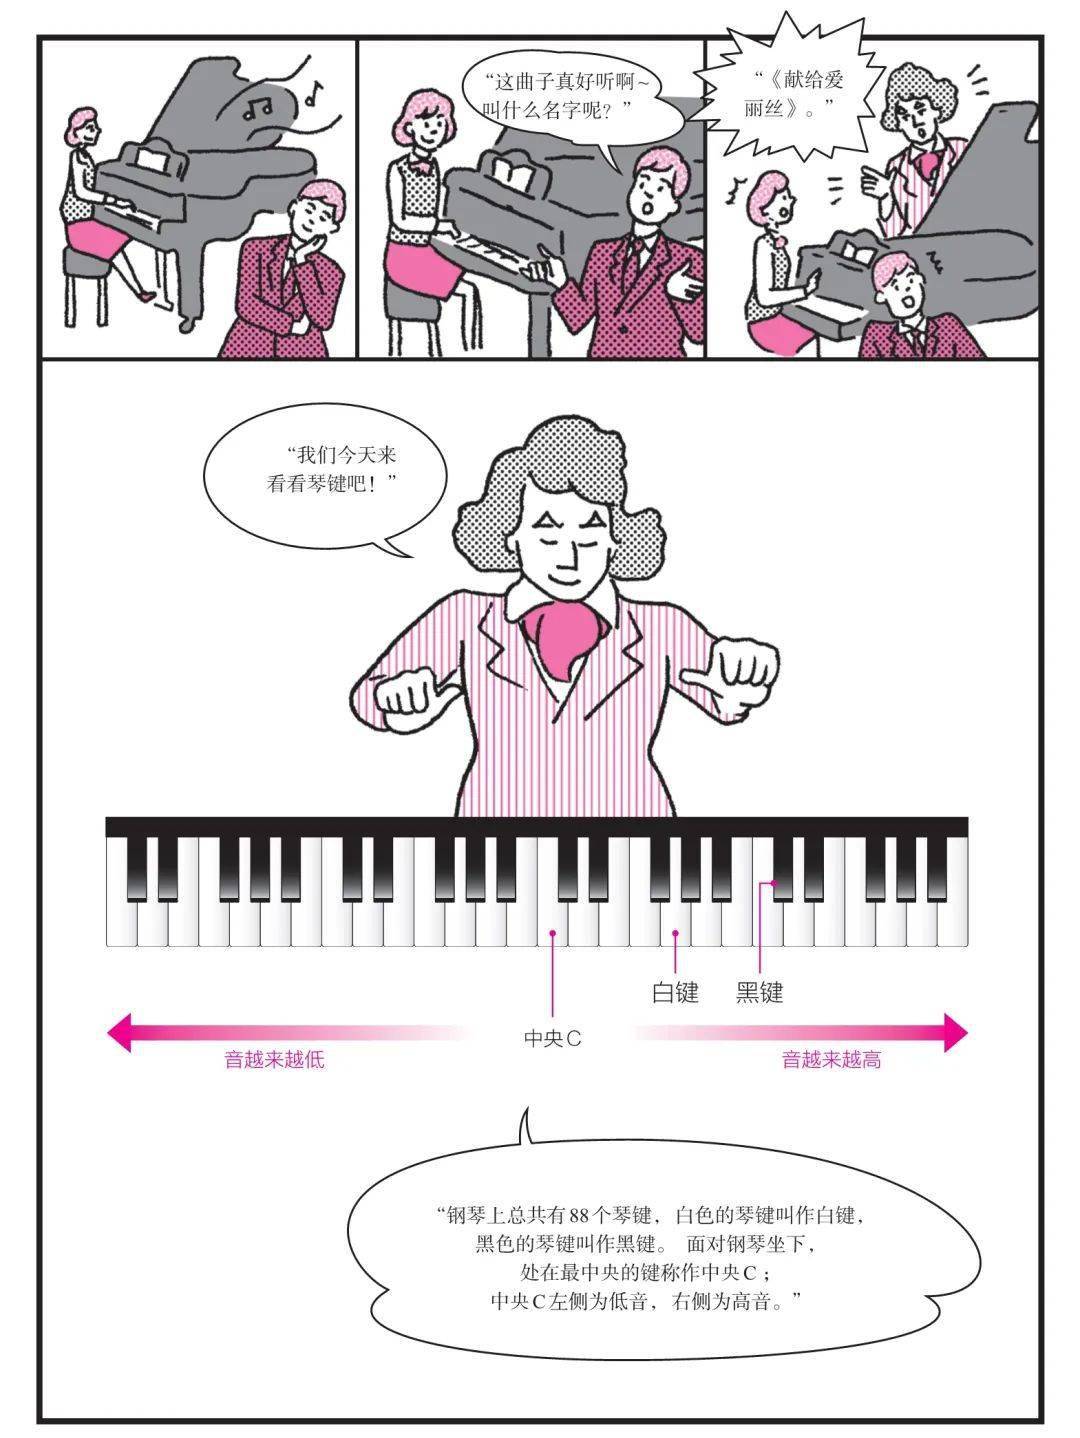 有趣！从认识音符到读懂乐谱？他用漫画版贝多芬教你做到！